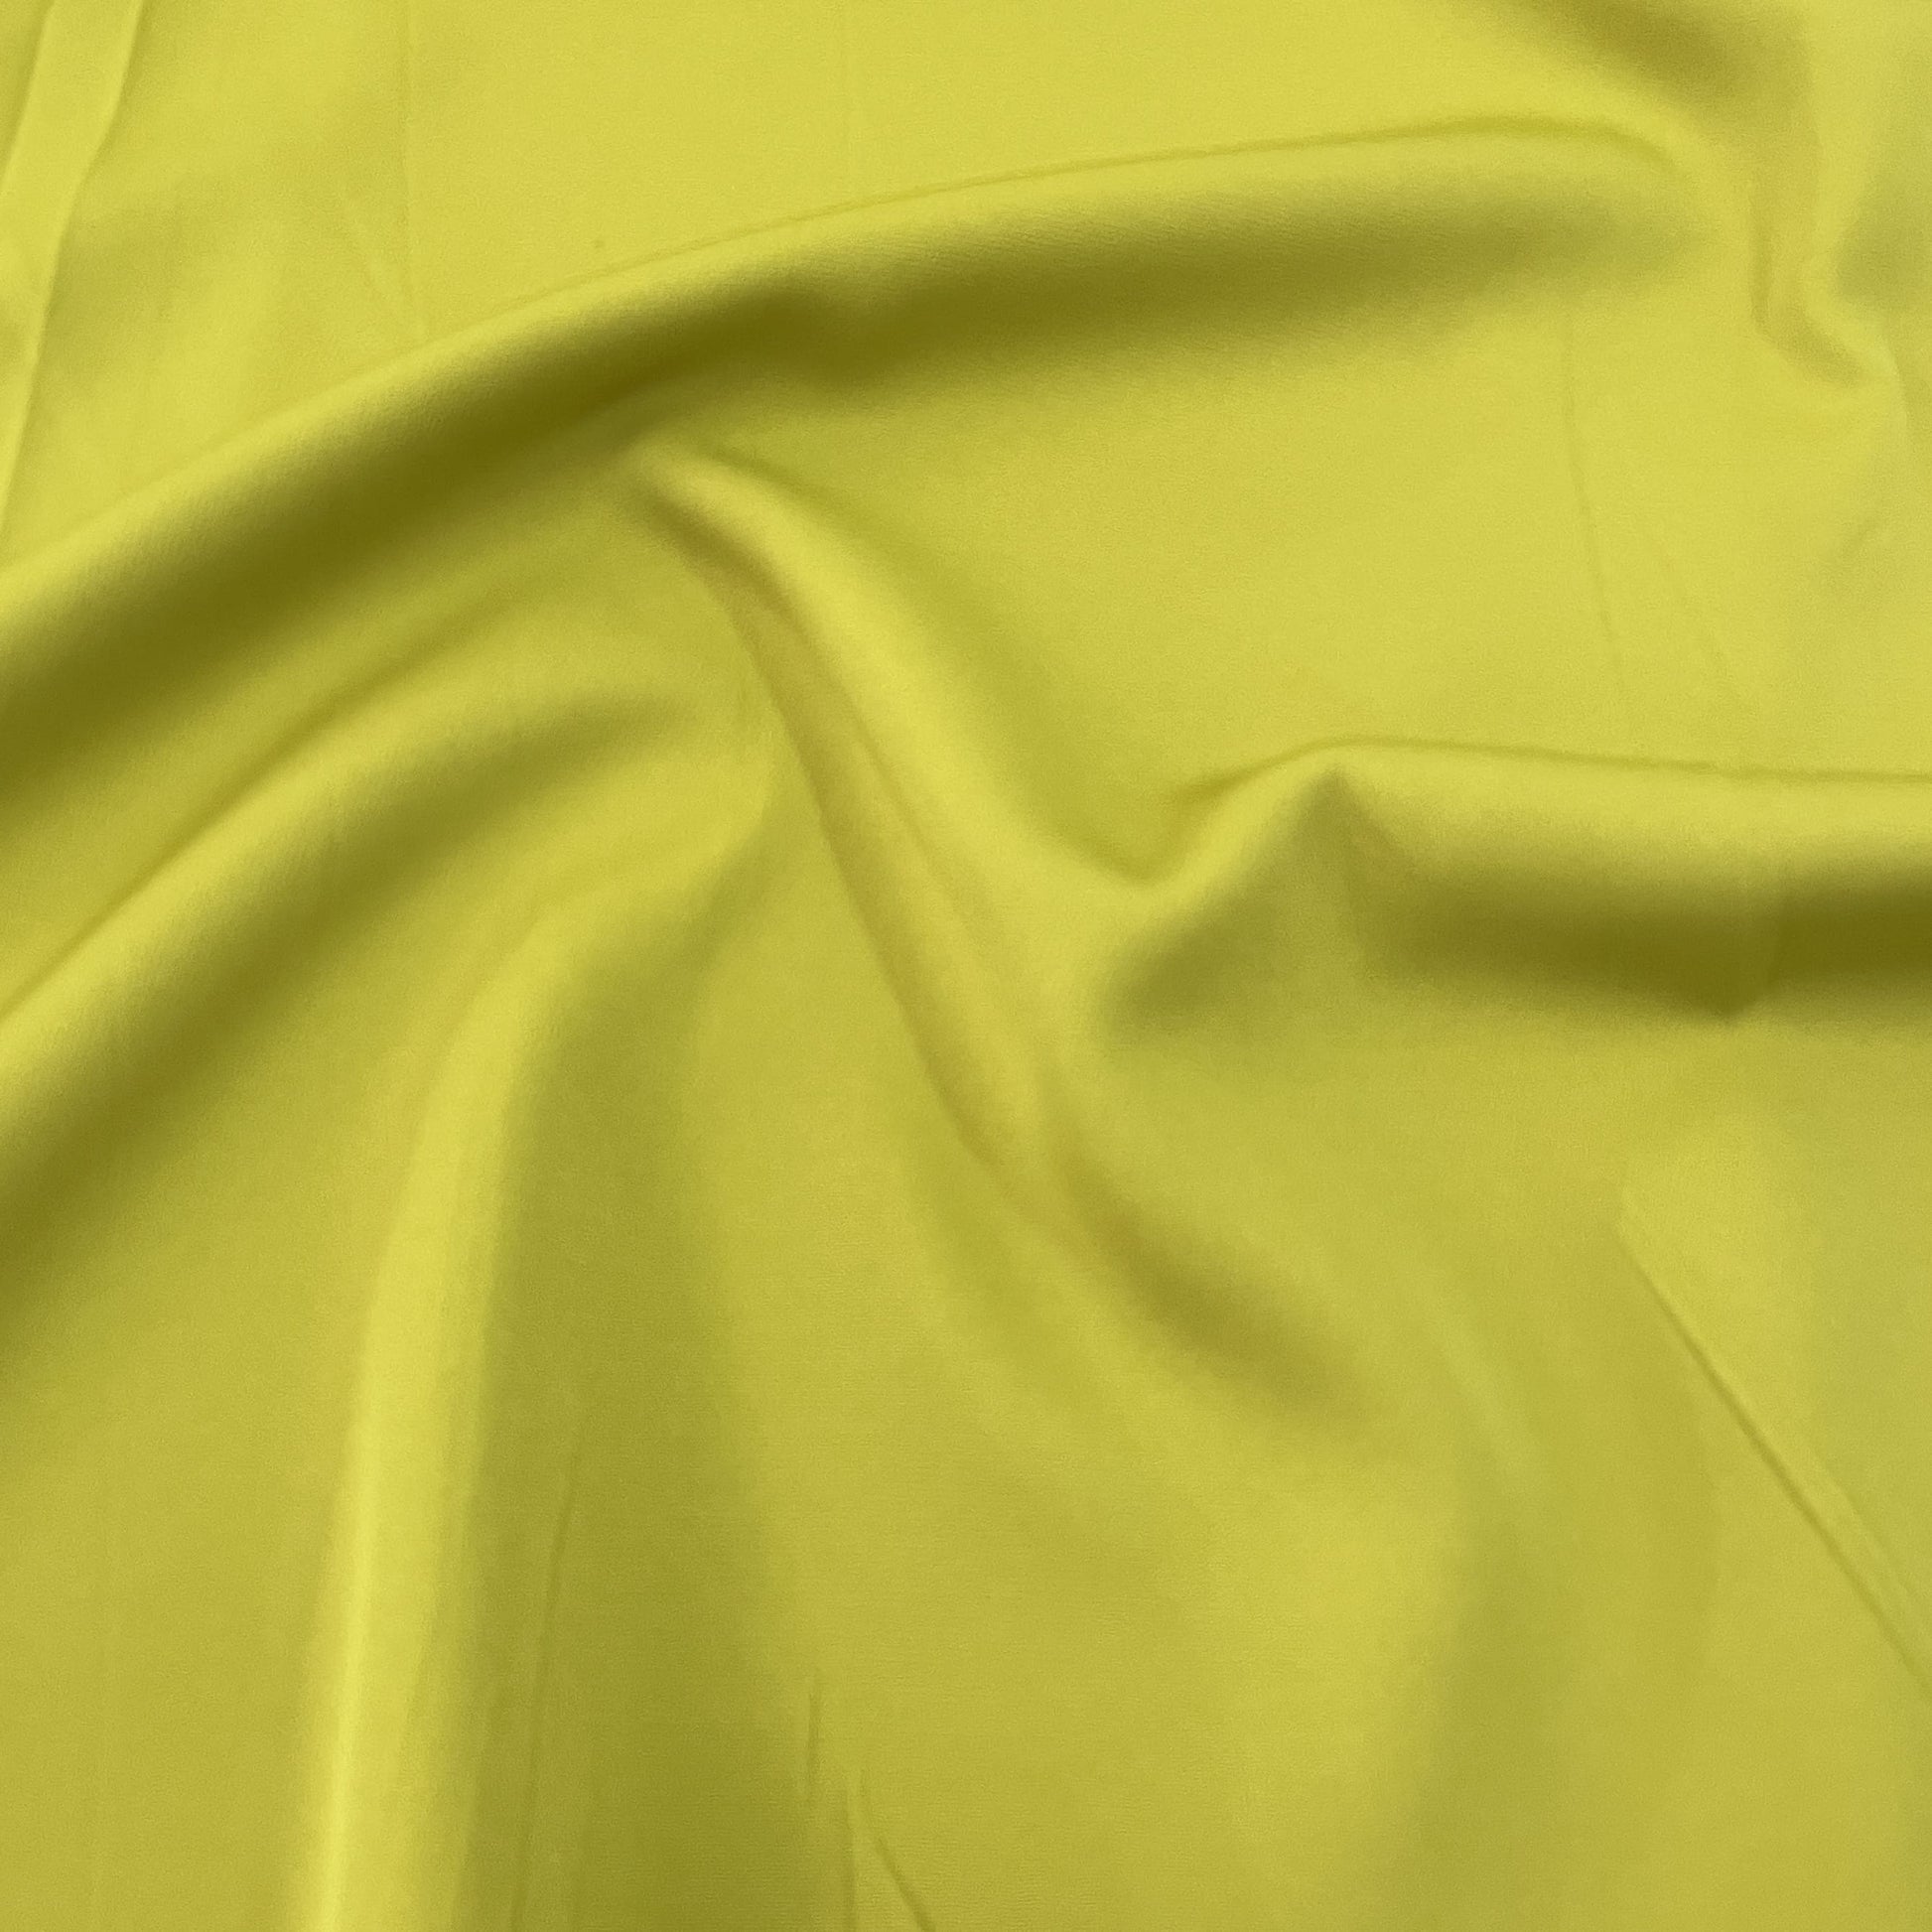 Premium Lemon Green Solid Banana Crepe FabricPremium Lemon Green Solid Banana Crepe Fabric